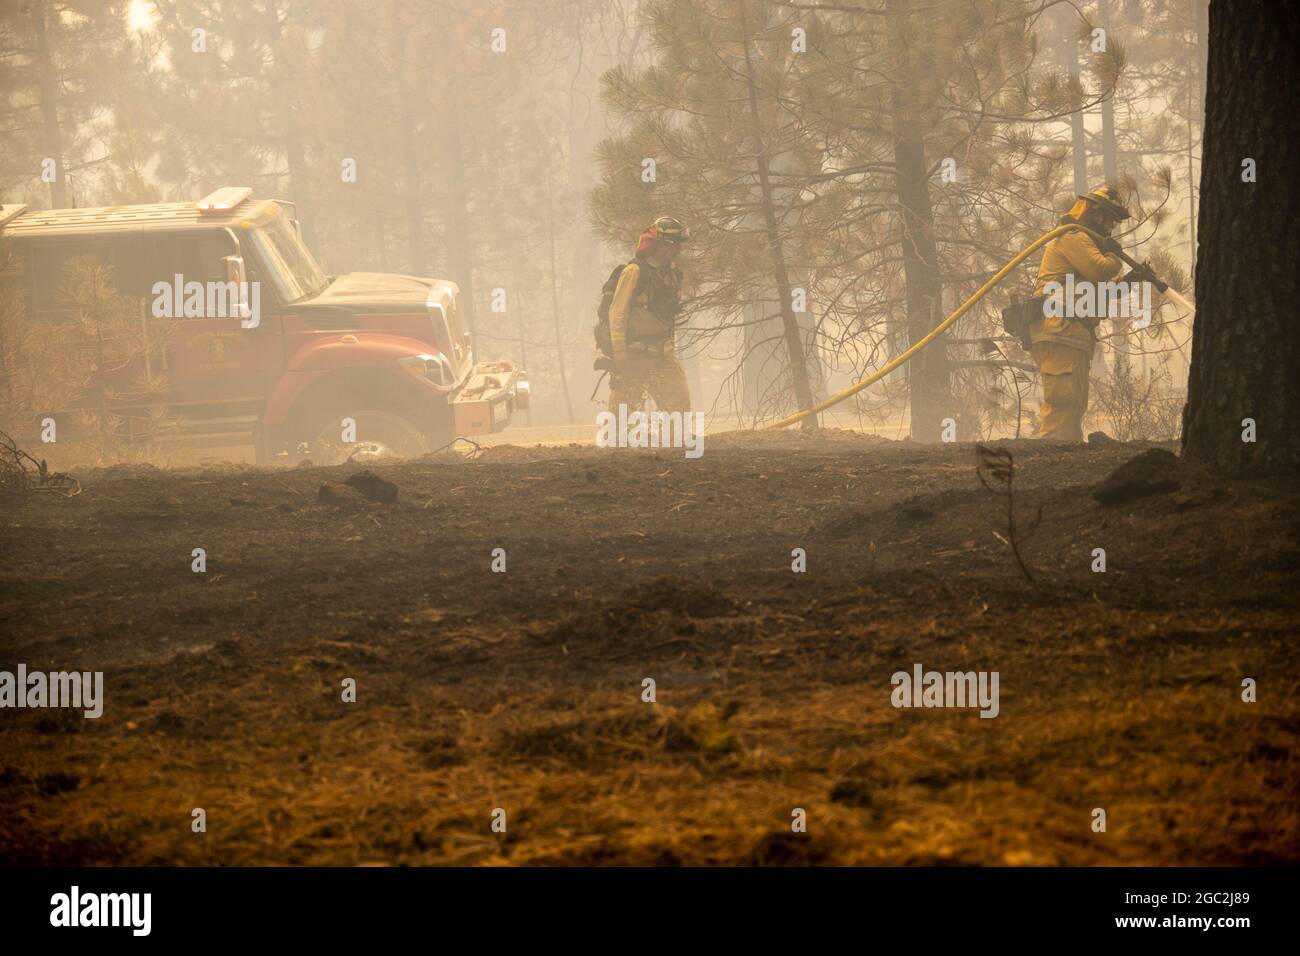 (210806) -- SAN FRANCISCO, 6. August 2021 (Xinhua) -- Feuerwehrleute kämpfen gegen ein Waldfeuer namens Dixie Fire in Butte County, Nordkalifornien, den Vereinigten Staaten, 5. August 2021. Ein massives Waldfeuer brannte am Dienstagmorgen über 253,000 Acres (rund 1,024 Quadratkilometer) in Nordkalifornien, was neue obligatorische Evakuierungsanweisungen und Warnungen für die lokalen Gemeinden zur Folge hatte. Das Feuer, das in den Grafschaften Plumas und Butte, genannt Dixie Fire, wütete, lag auf 253,052 Acres und war zu 35 Prozent eingedämmt, sagte das kalifornische Ministerium für Forstwirtschaft und Brandschutz (Cal Fire) in einem Zwischenbericht am Dienstag Morgen Stockfoto